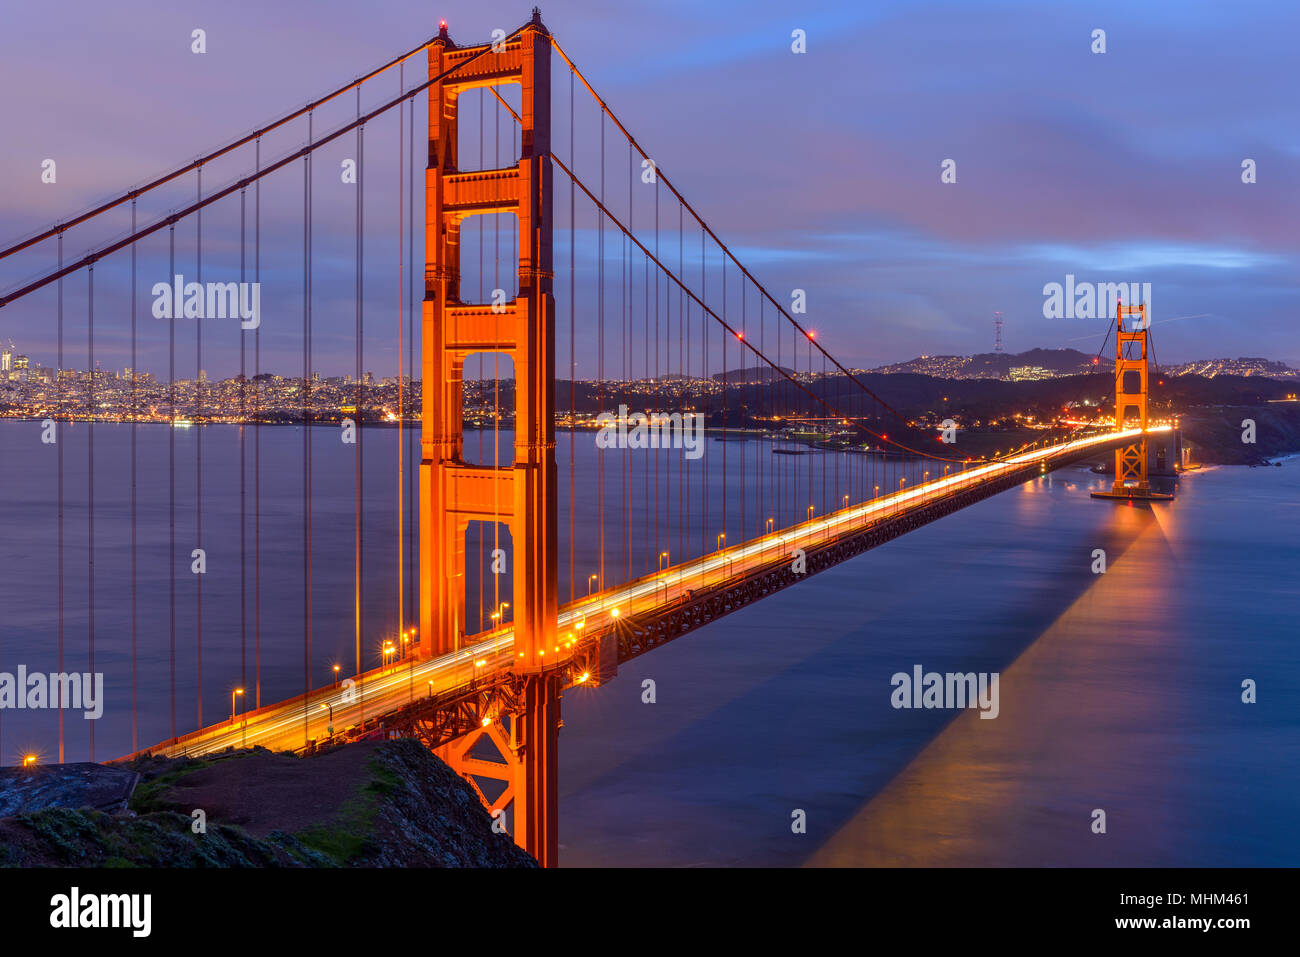 Sunset Golden Gate Bridge - Bewölkt - Winter - Tag Sonnenuntergang Blick auf die Golden Gate Bridge, von Hilltop an Marin Headlands in Richtung San Francisco, CA, USA Stockfoto